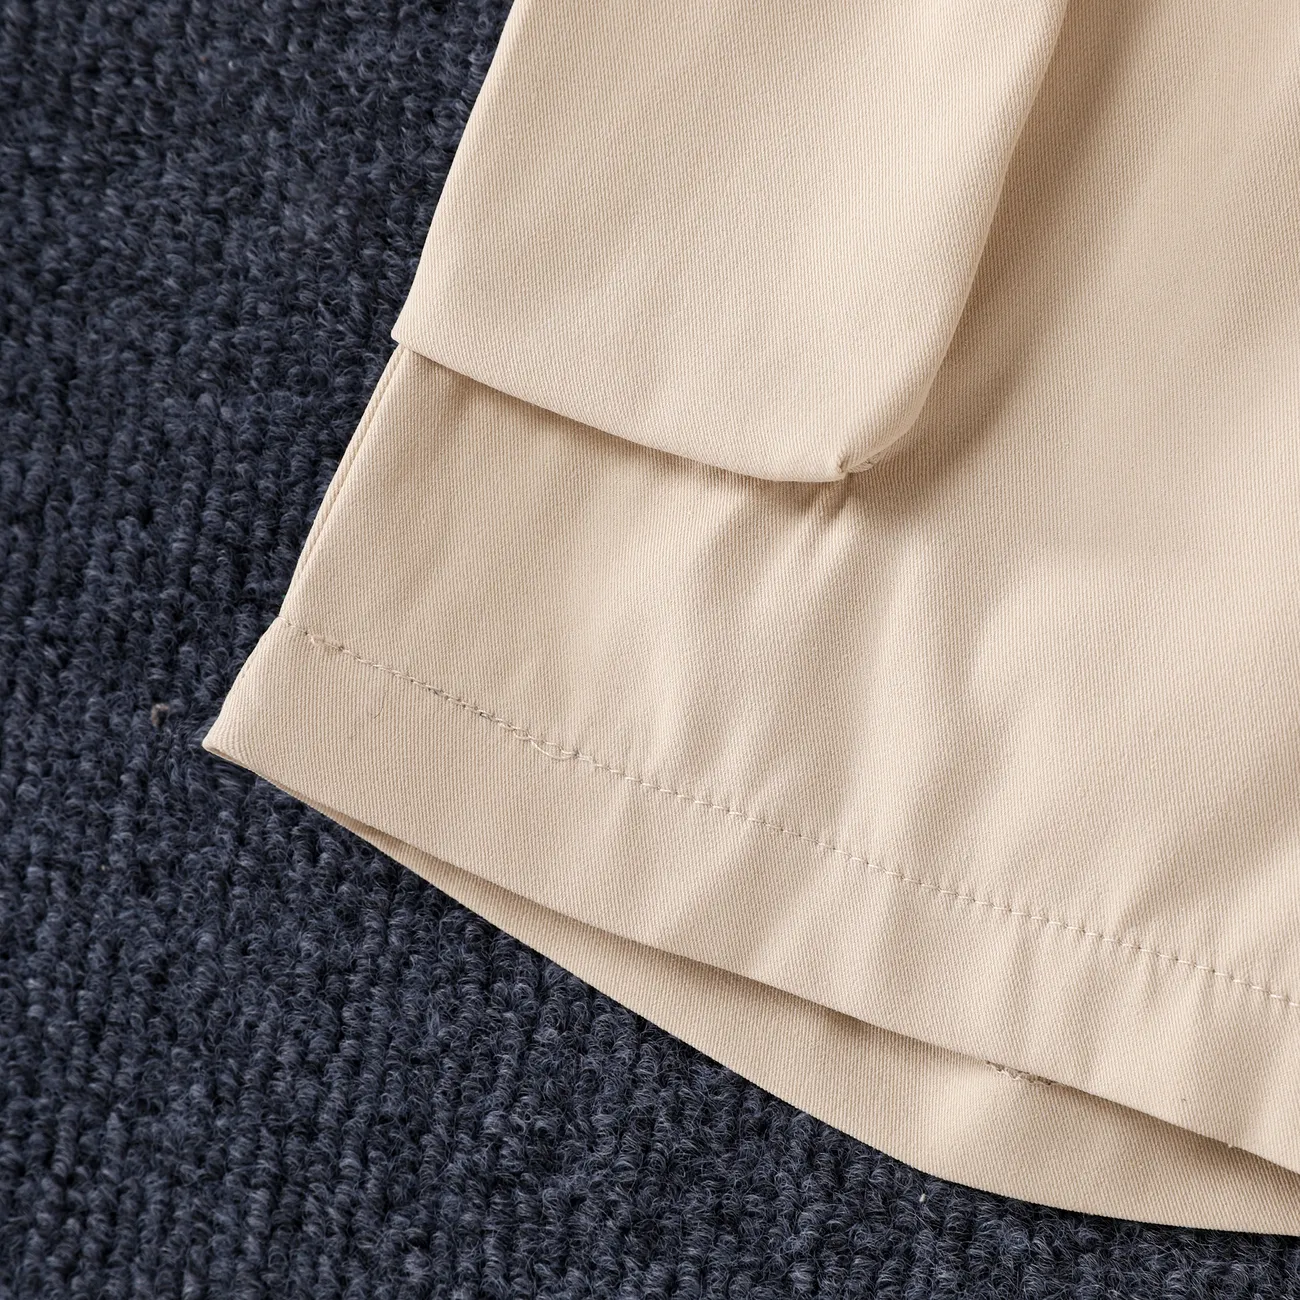 Pantalones cortos casuales de poliéster para niño con bolsillos - Color liso Caqui big image 1